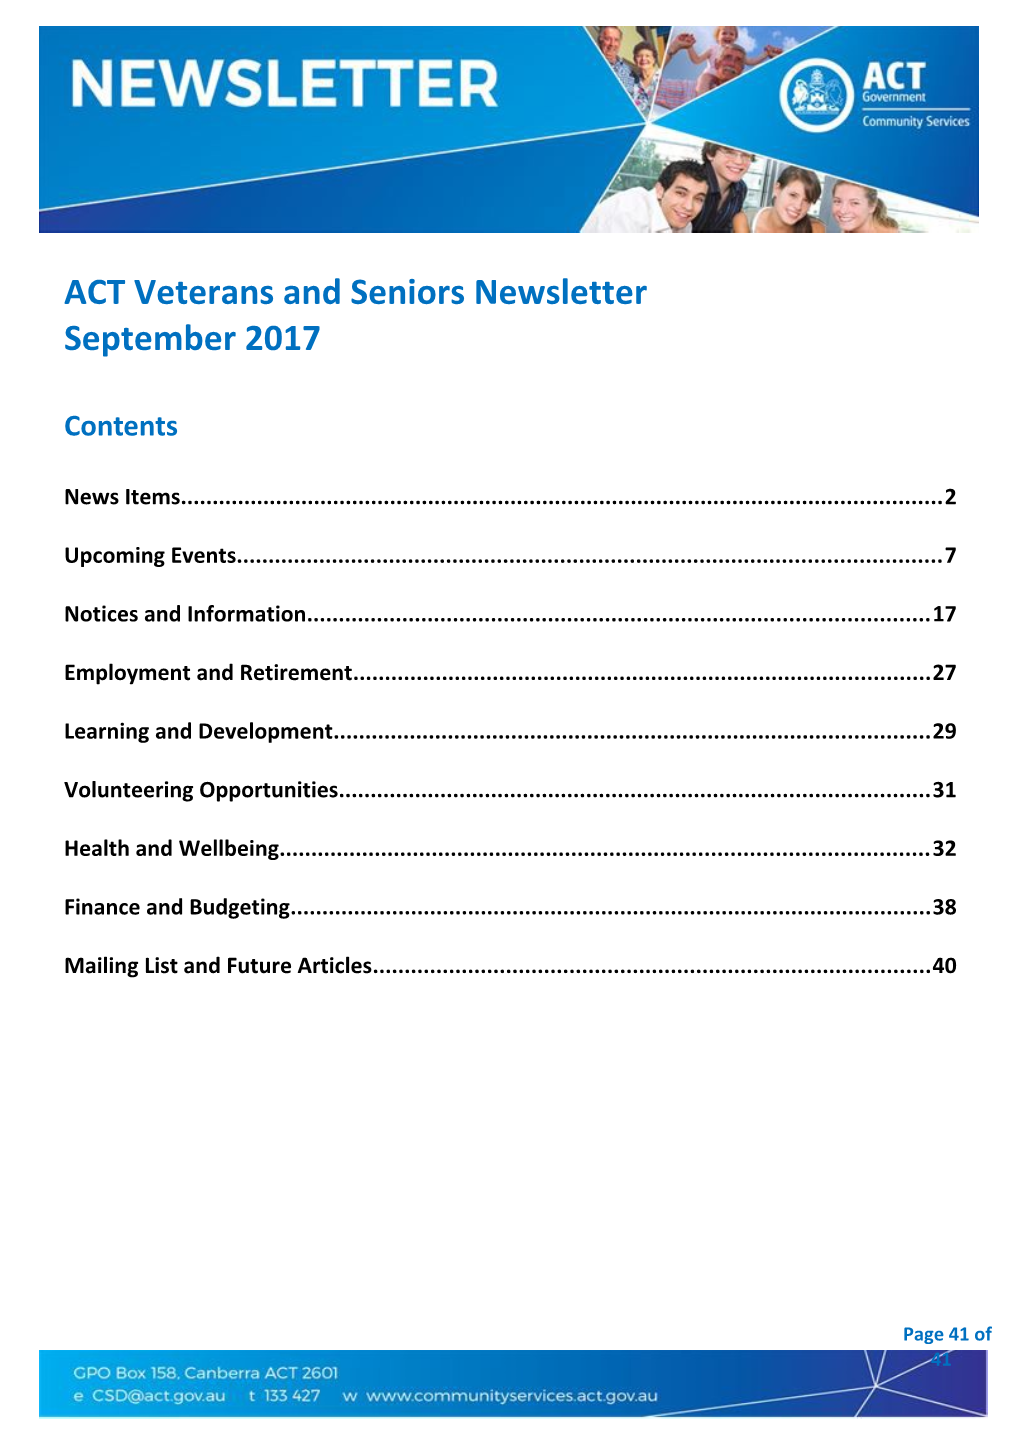 ACT Veterans and Seniors Newsletter September 2017